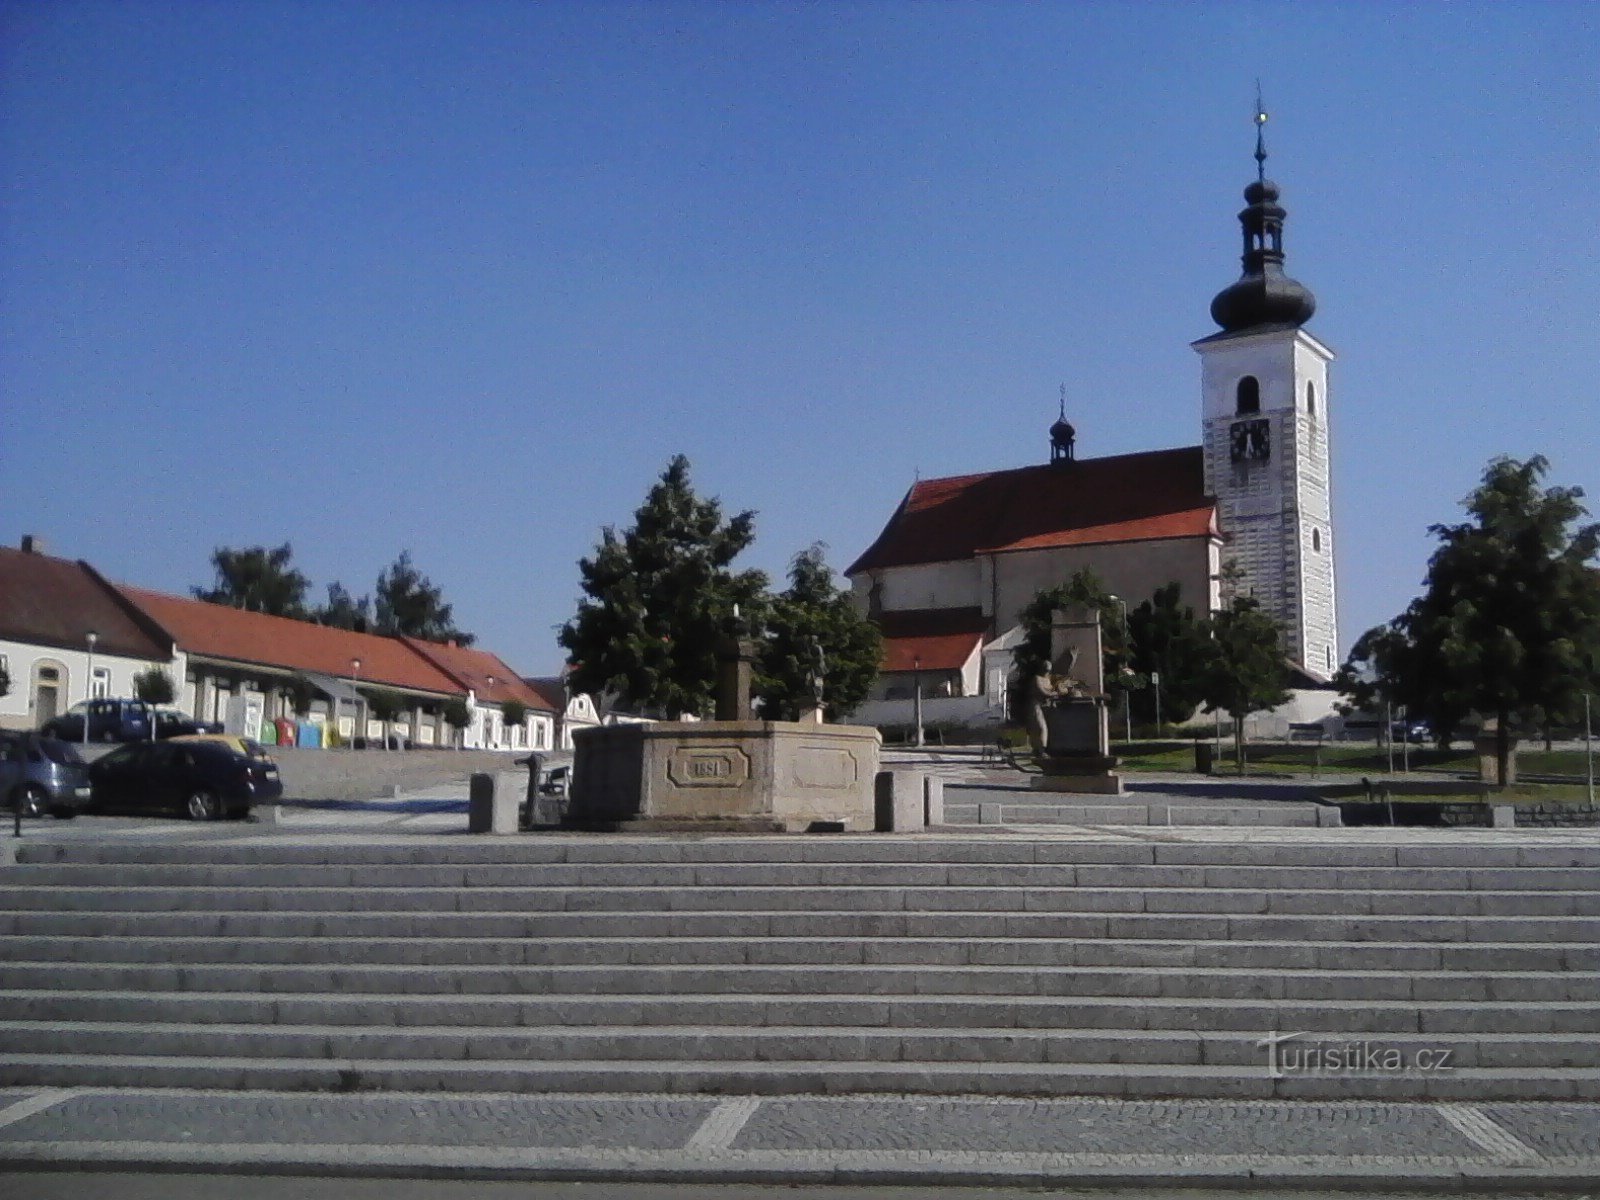 2. Igreja de S. Vavřinec em Prčica é originalmente românica, foi fundada no século XII, talvez em